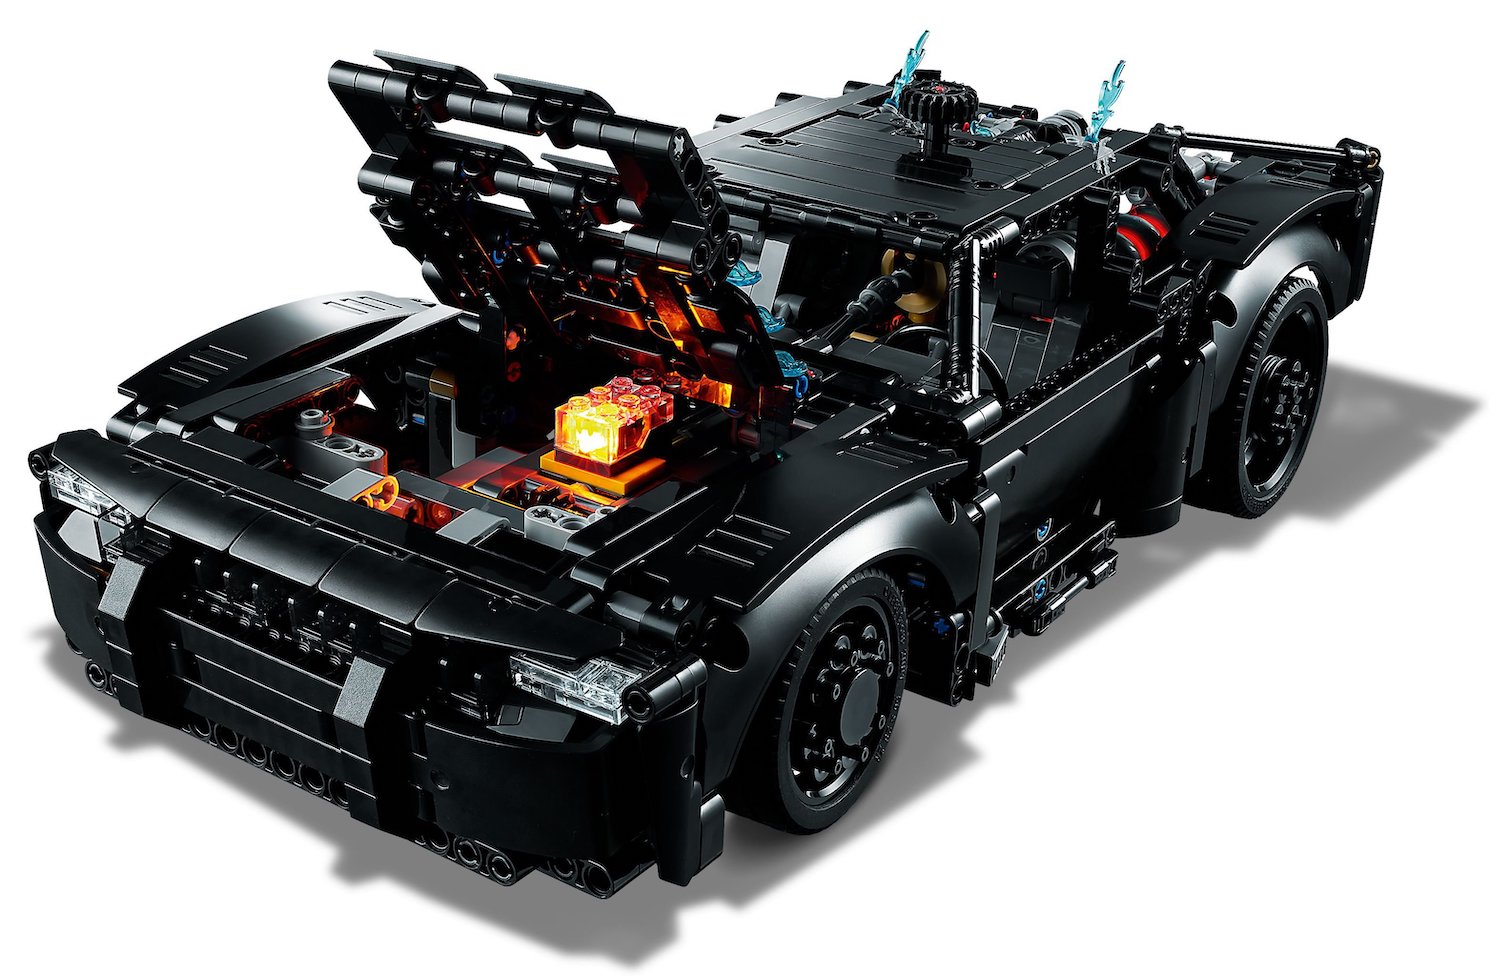 LEGO Technic New Sets for Jan. 1st 2022 Revealed | Batmobile, Monster Jam and more